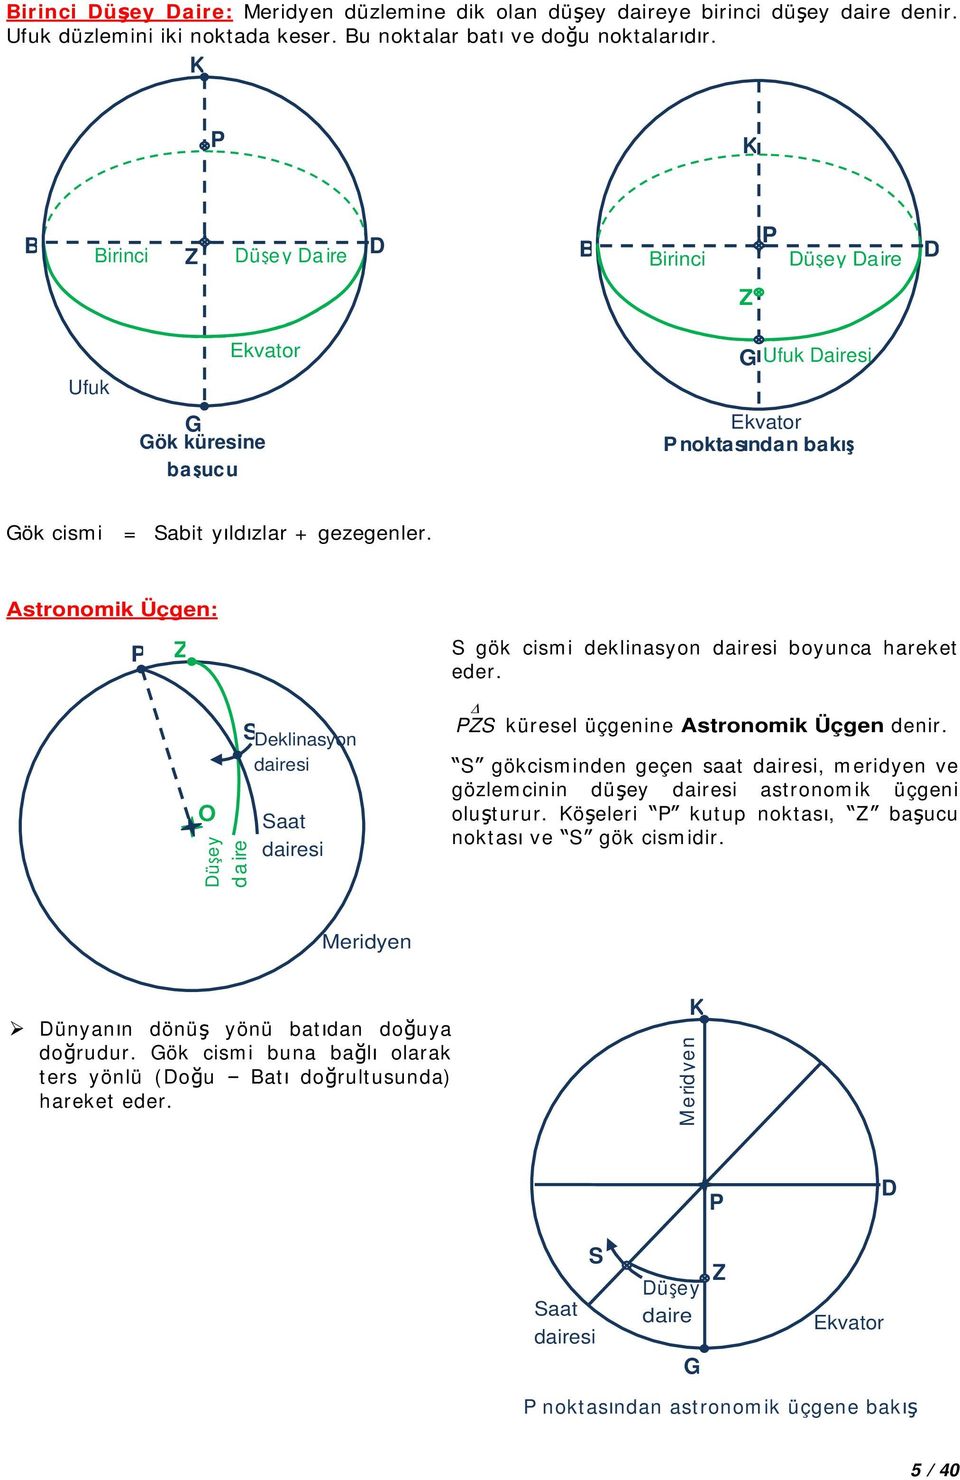 Asronomik Üçgen: gök cismi deklinasyon dairesi boyunca hareke eder. O Dü ey d a ire Deklinasyon dairesi aa dairesi küresel üçgenine Asronomik Üçgen denir.